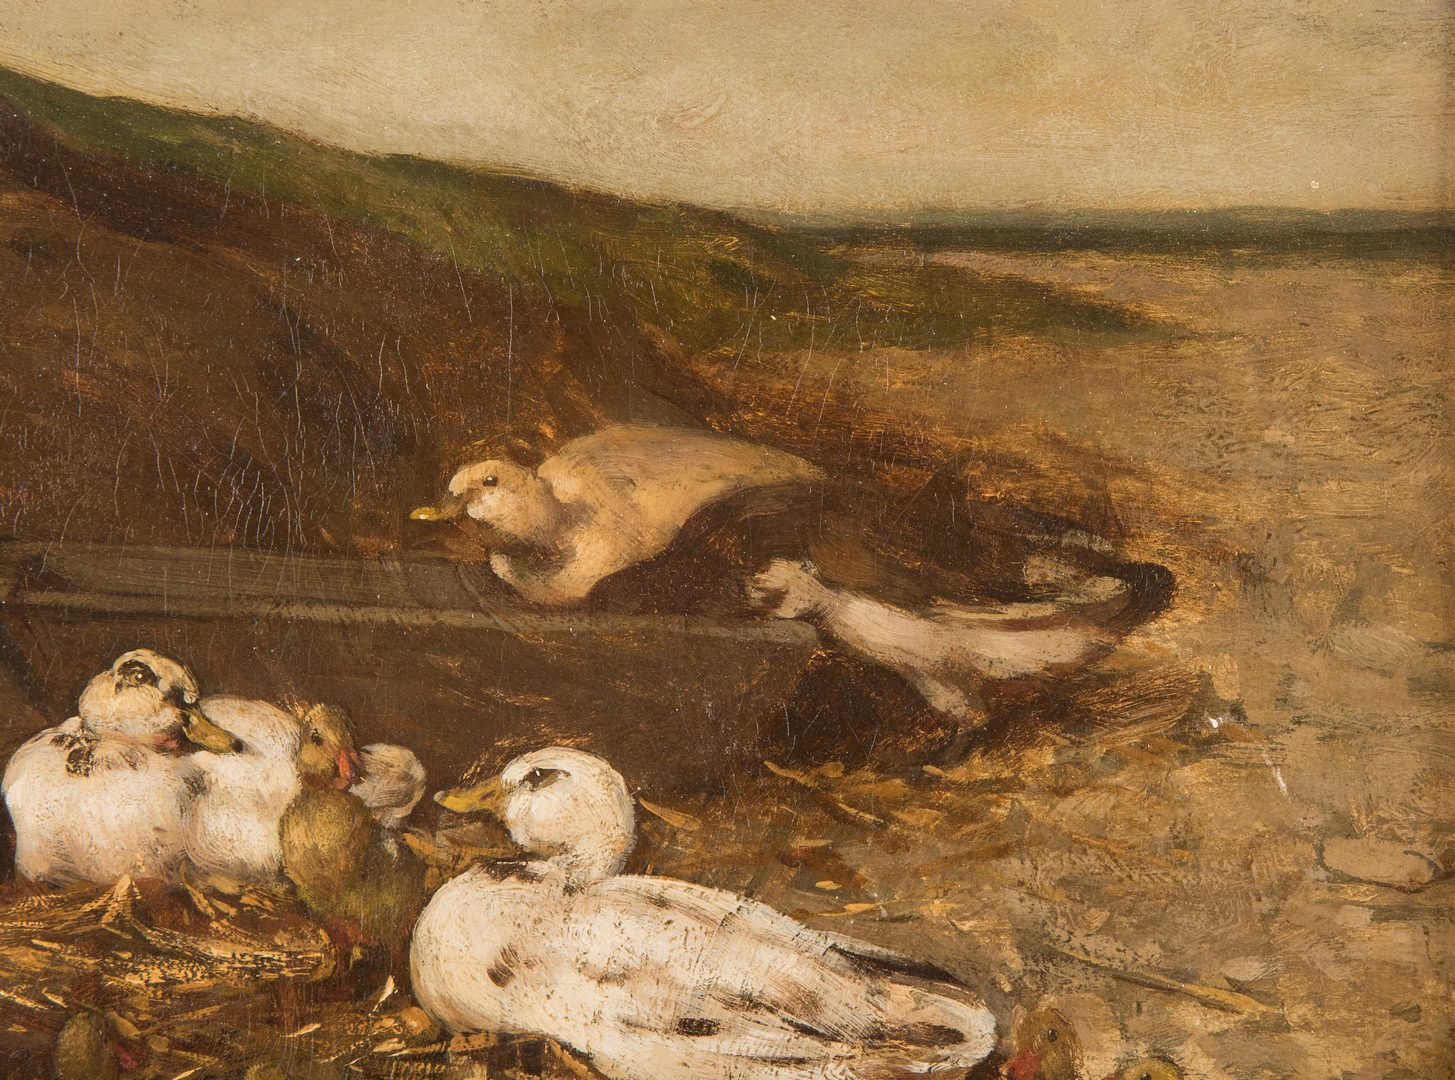 Lot 322: Charles E. Jacque O/C, Ducks on a Seashore